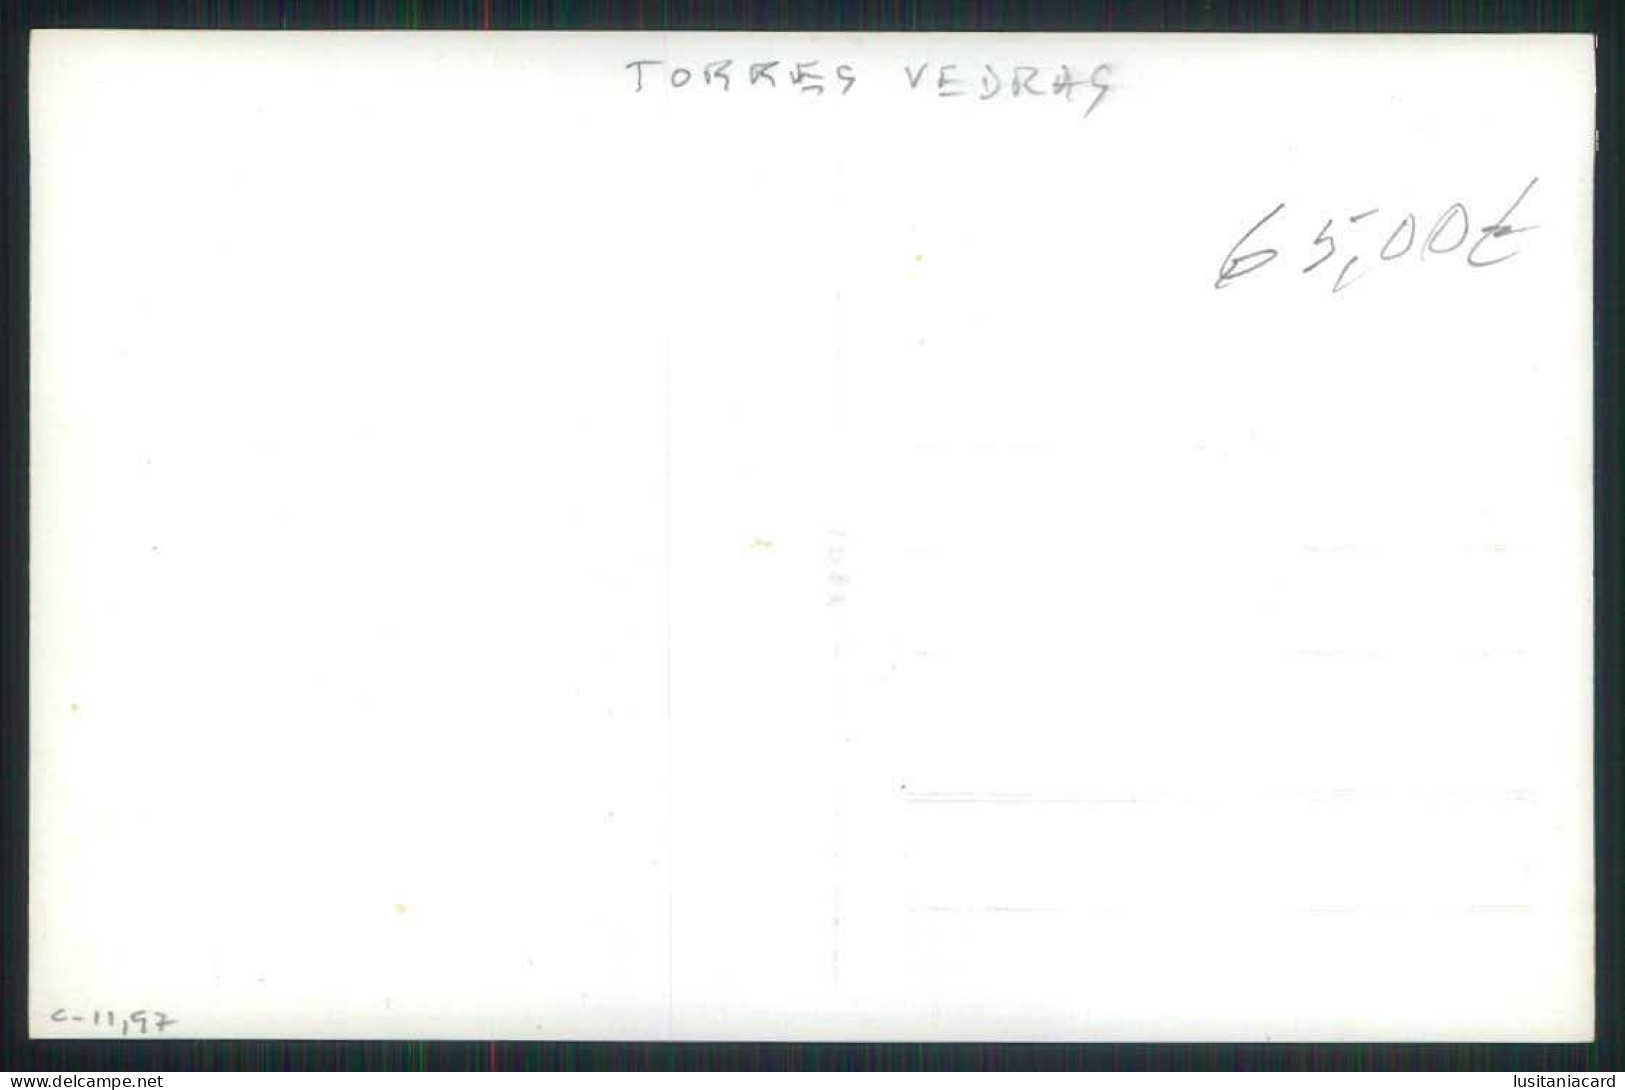 TORRES VEDRAS - ESTABELECIMENTO COMERCIAL - Café A Brasileira De Torres. Pasteis De Feijão.   Carte Postale - Lisboa